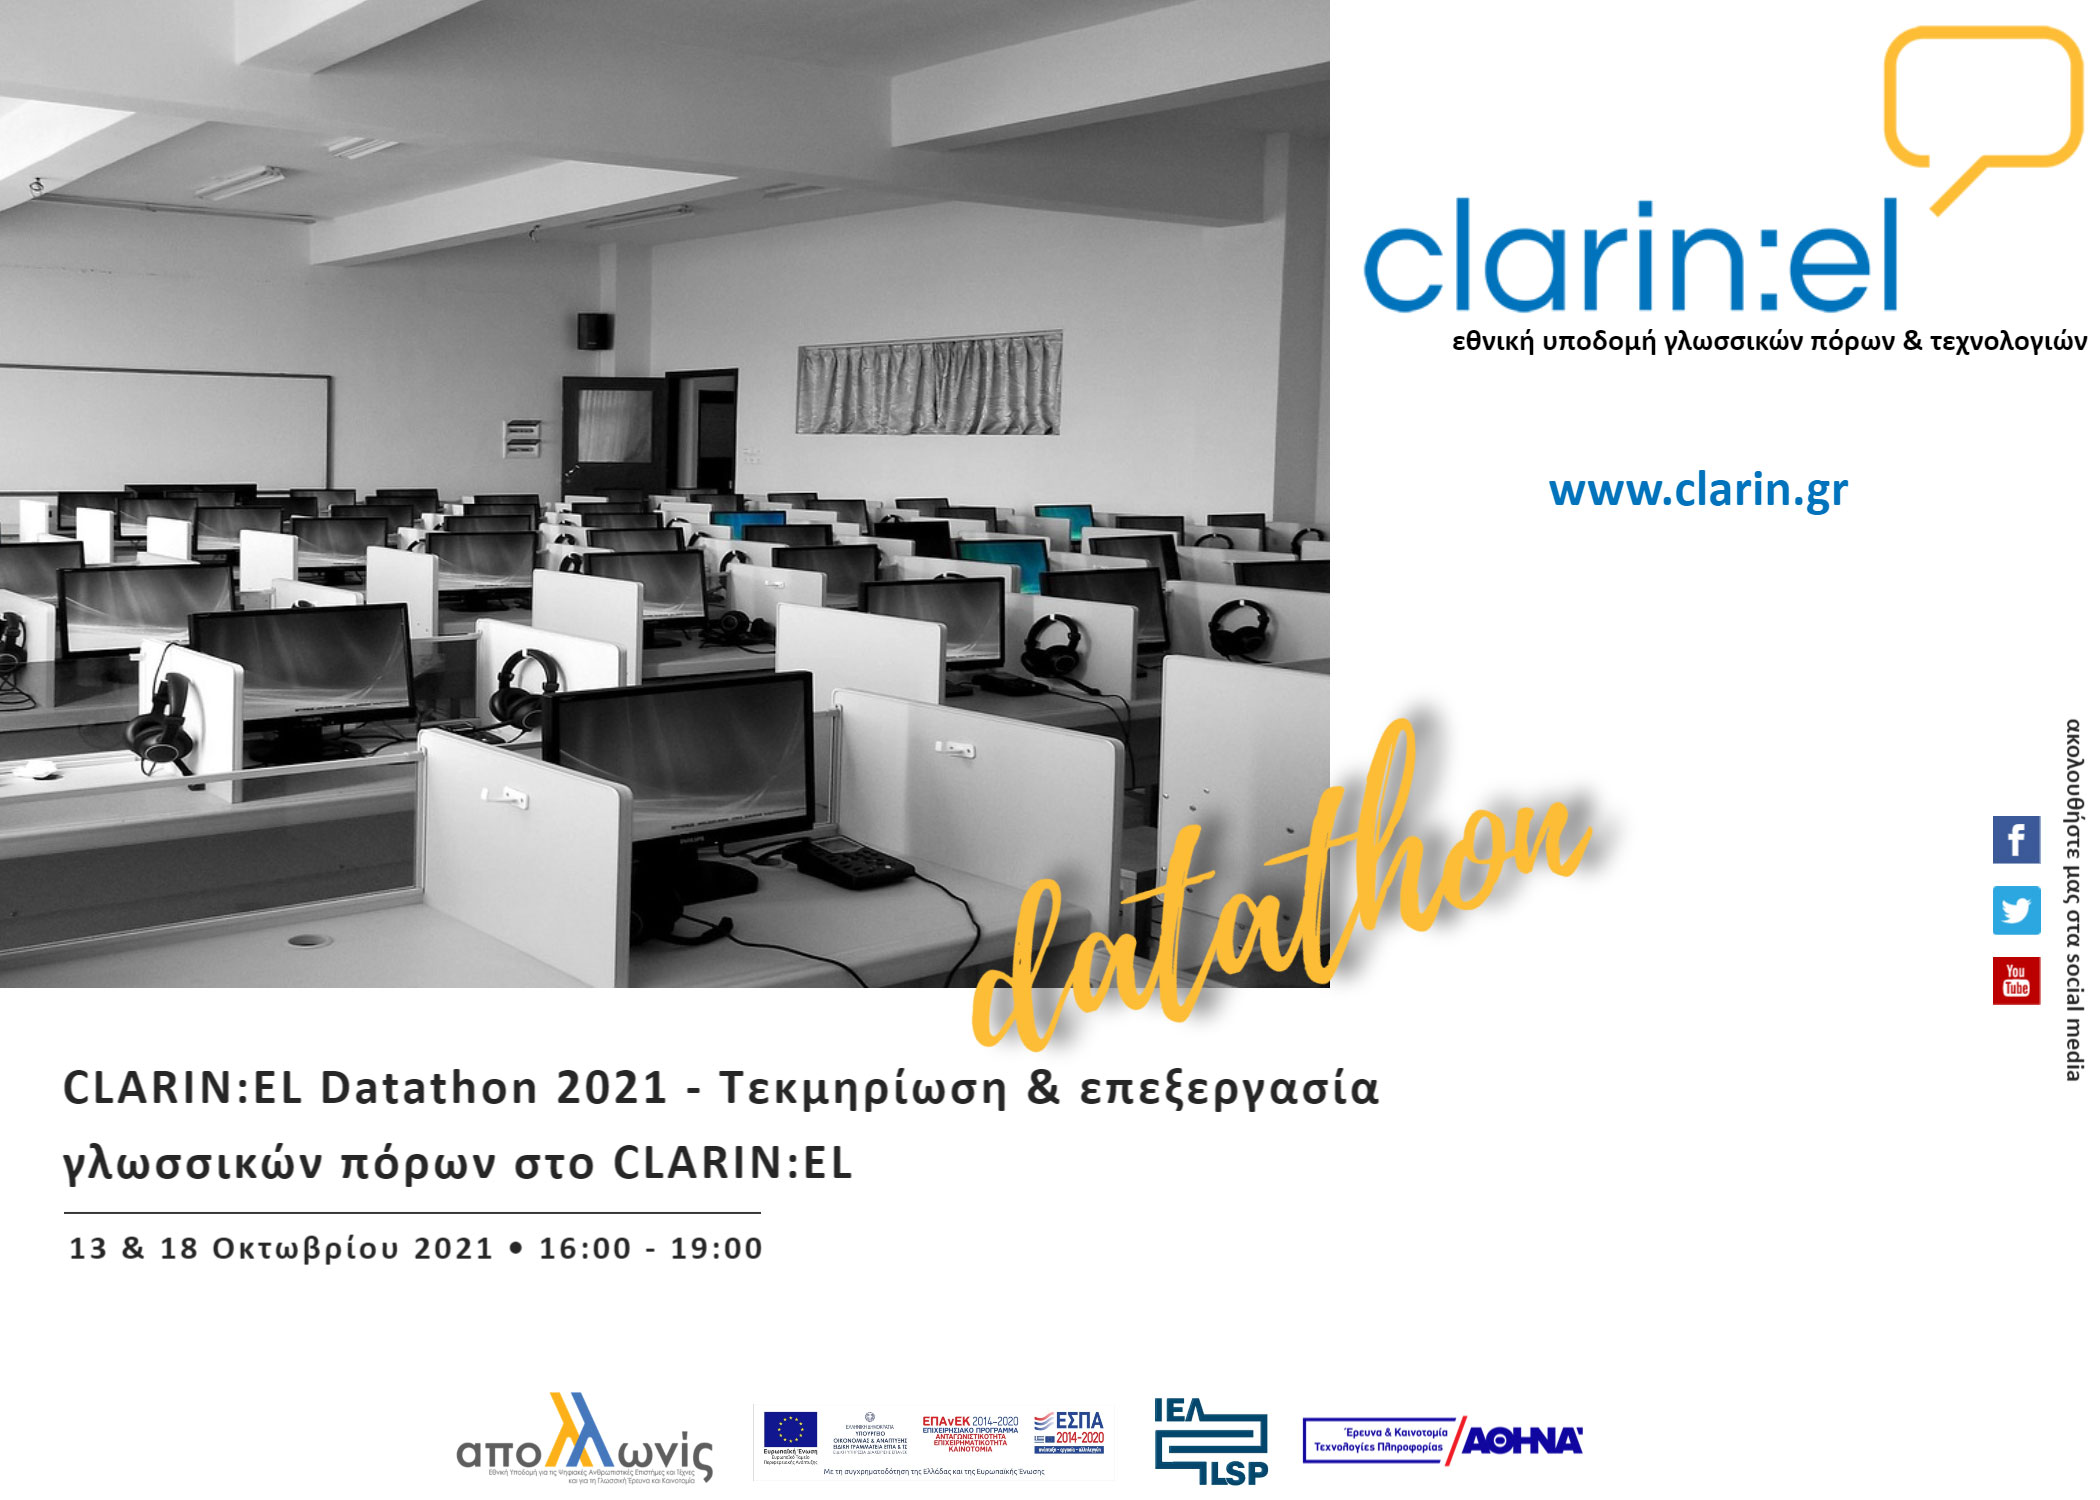 CLARIN:EL Datathons 2021- Τεκμηρίωση και επεξεργασία γλωσσικών δεδομένων στο CLARIN:EL